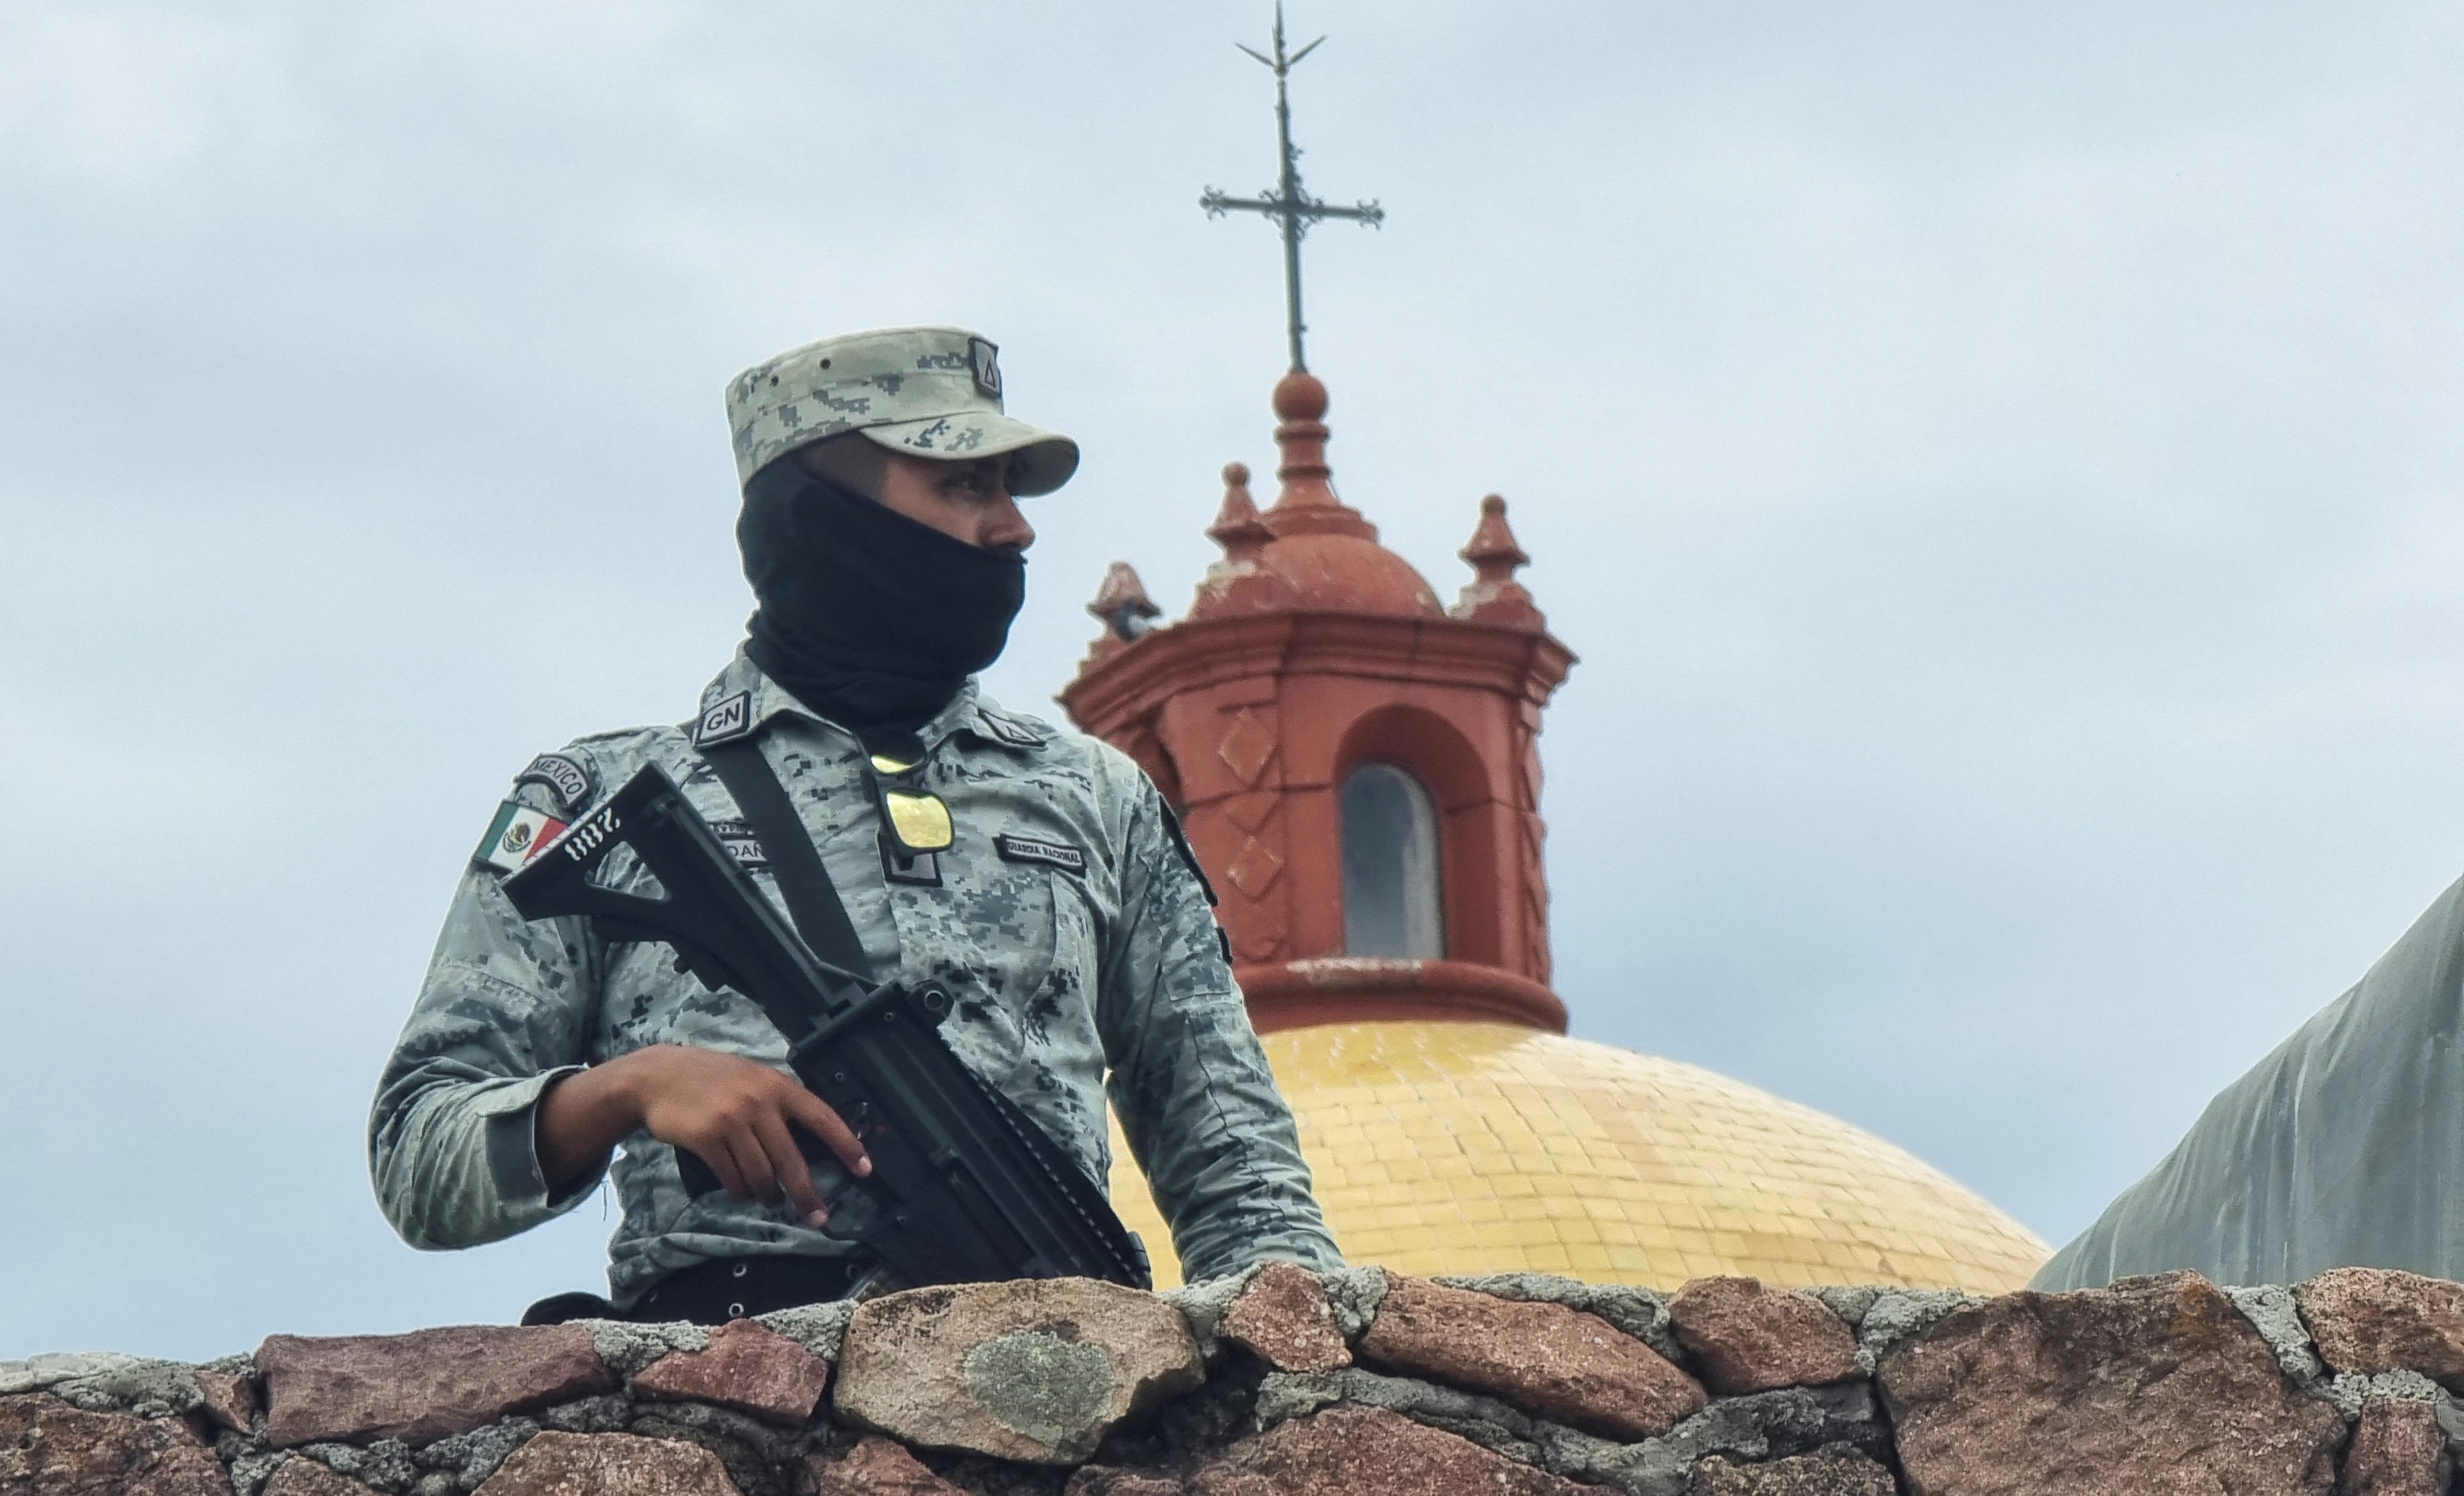 Los obispos mexicanos destacaron su “profunda preocupación” por la creciente ola de violencia que sufre el país (REUTERS/Stringer)